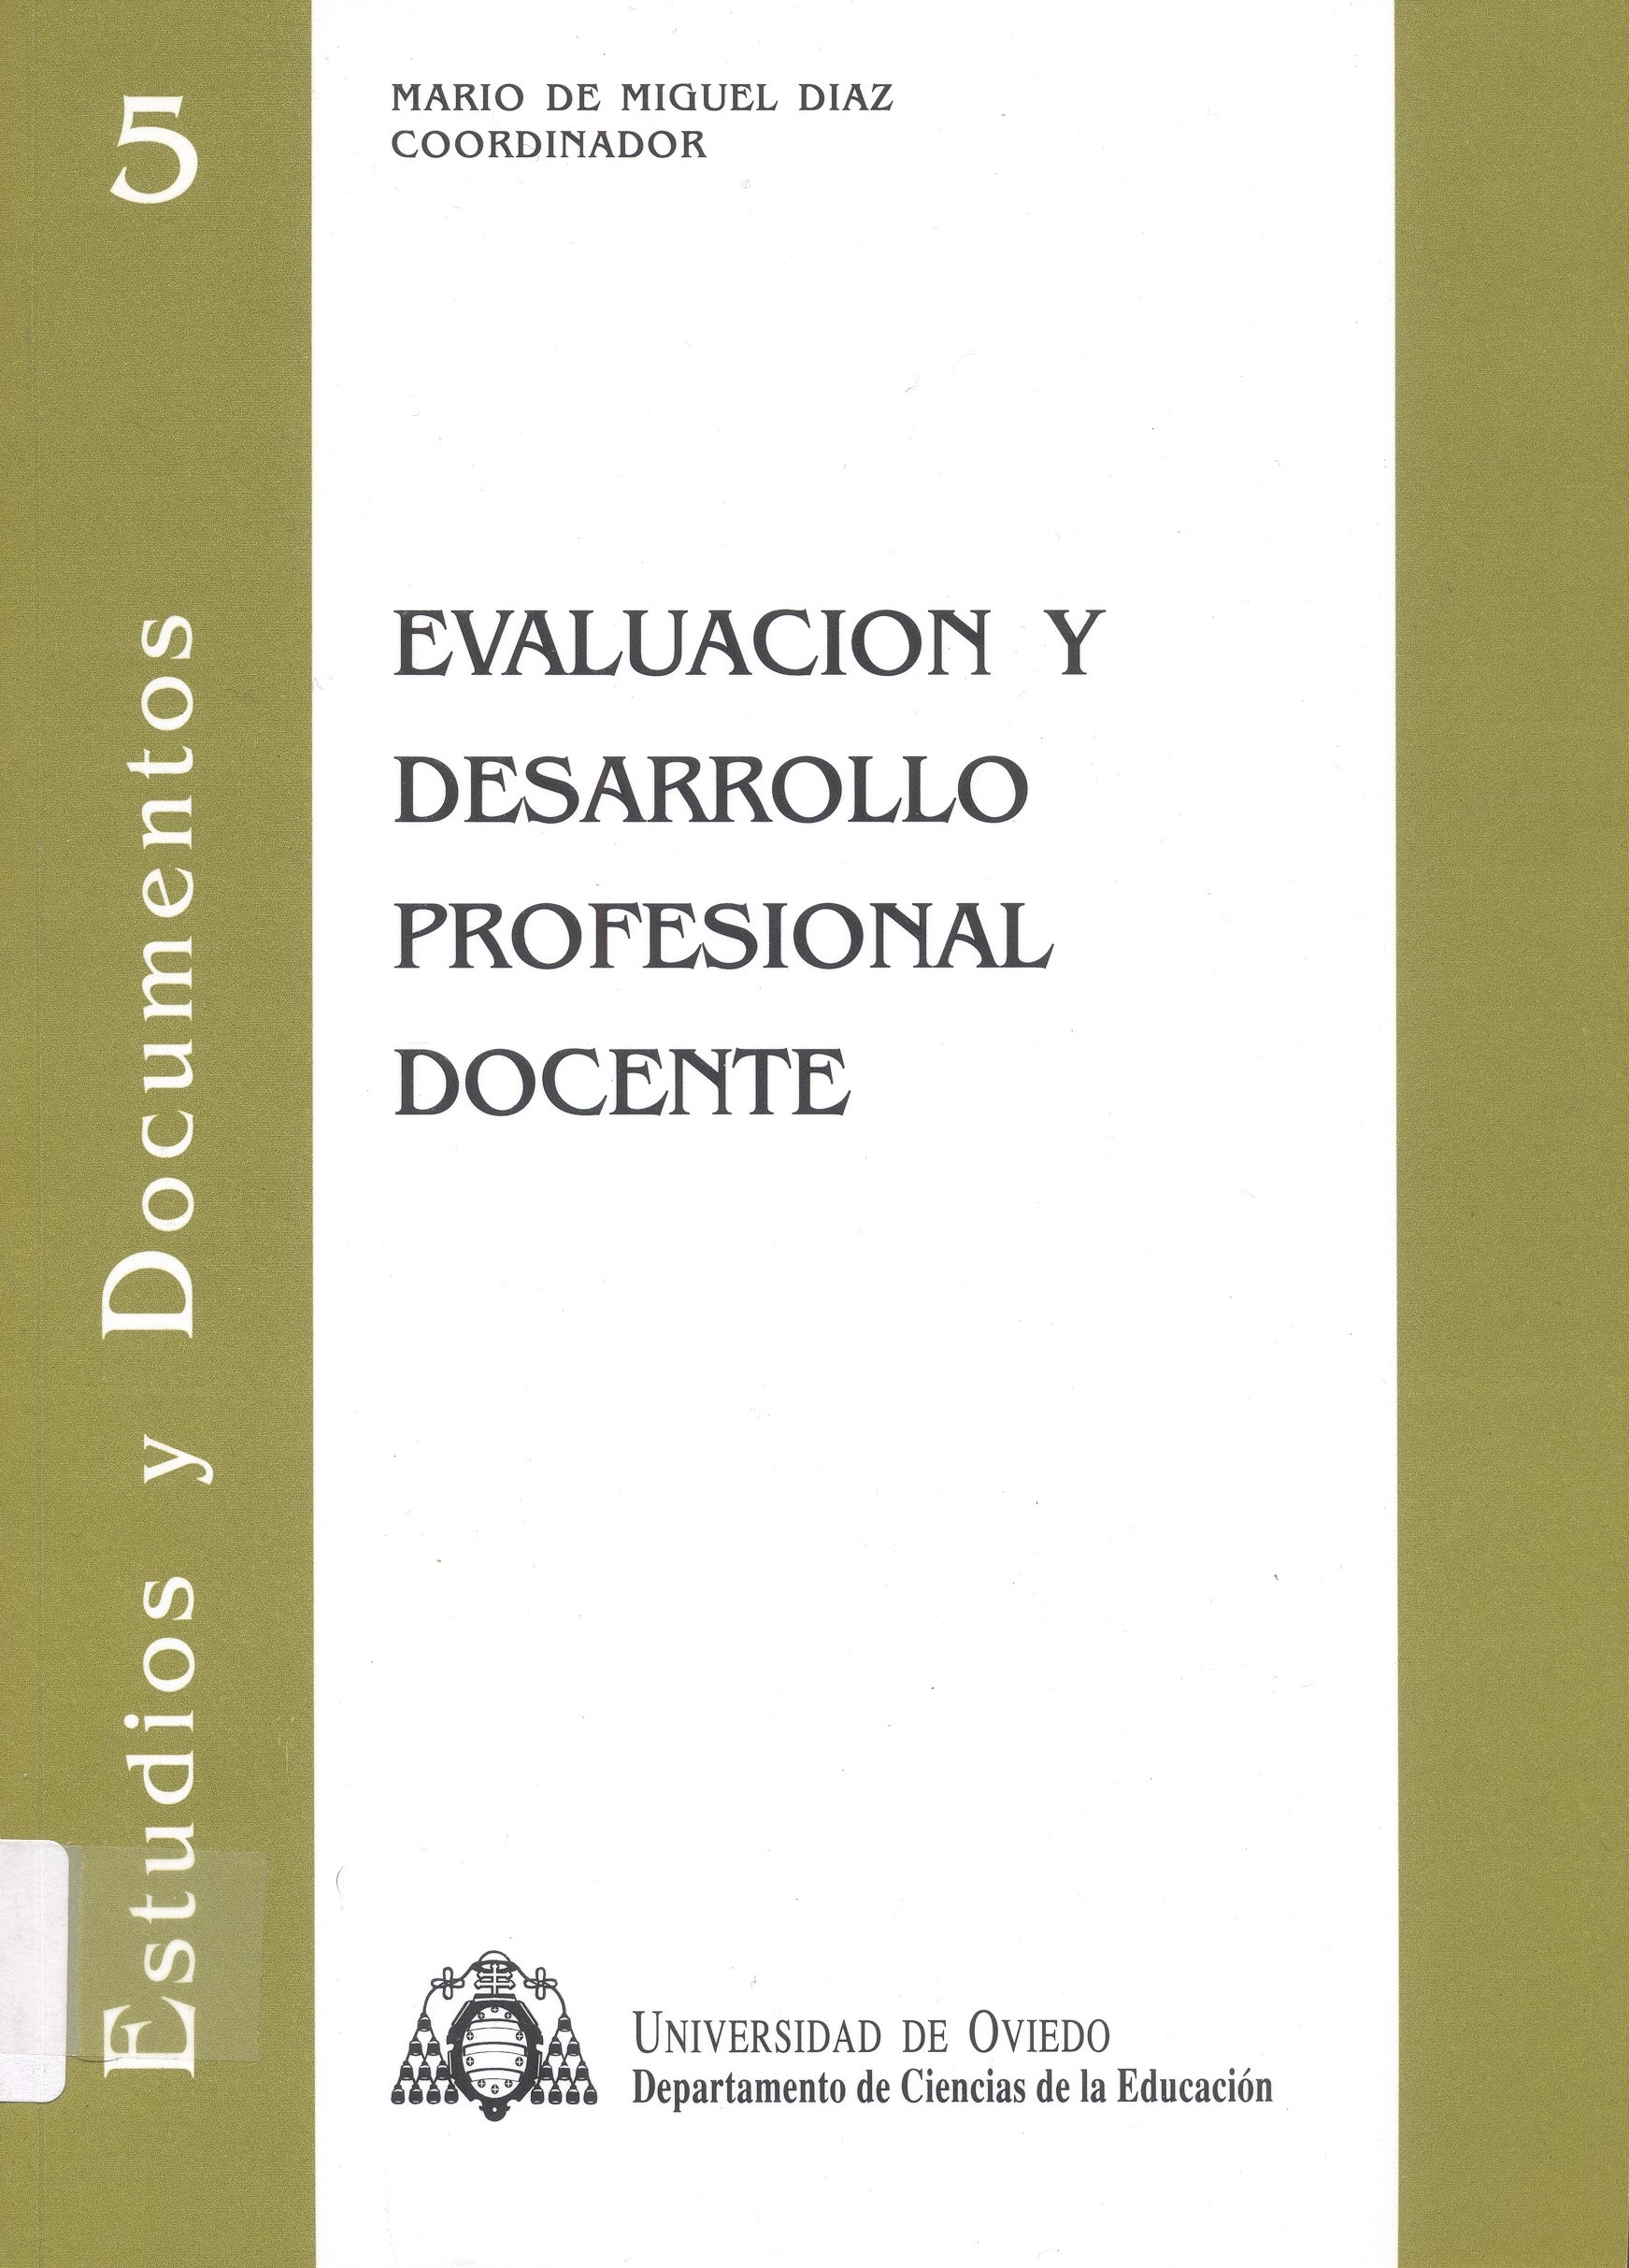 Imagen de portada del libro Evaluación y desarrollo profesional docente